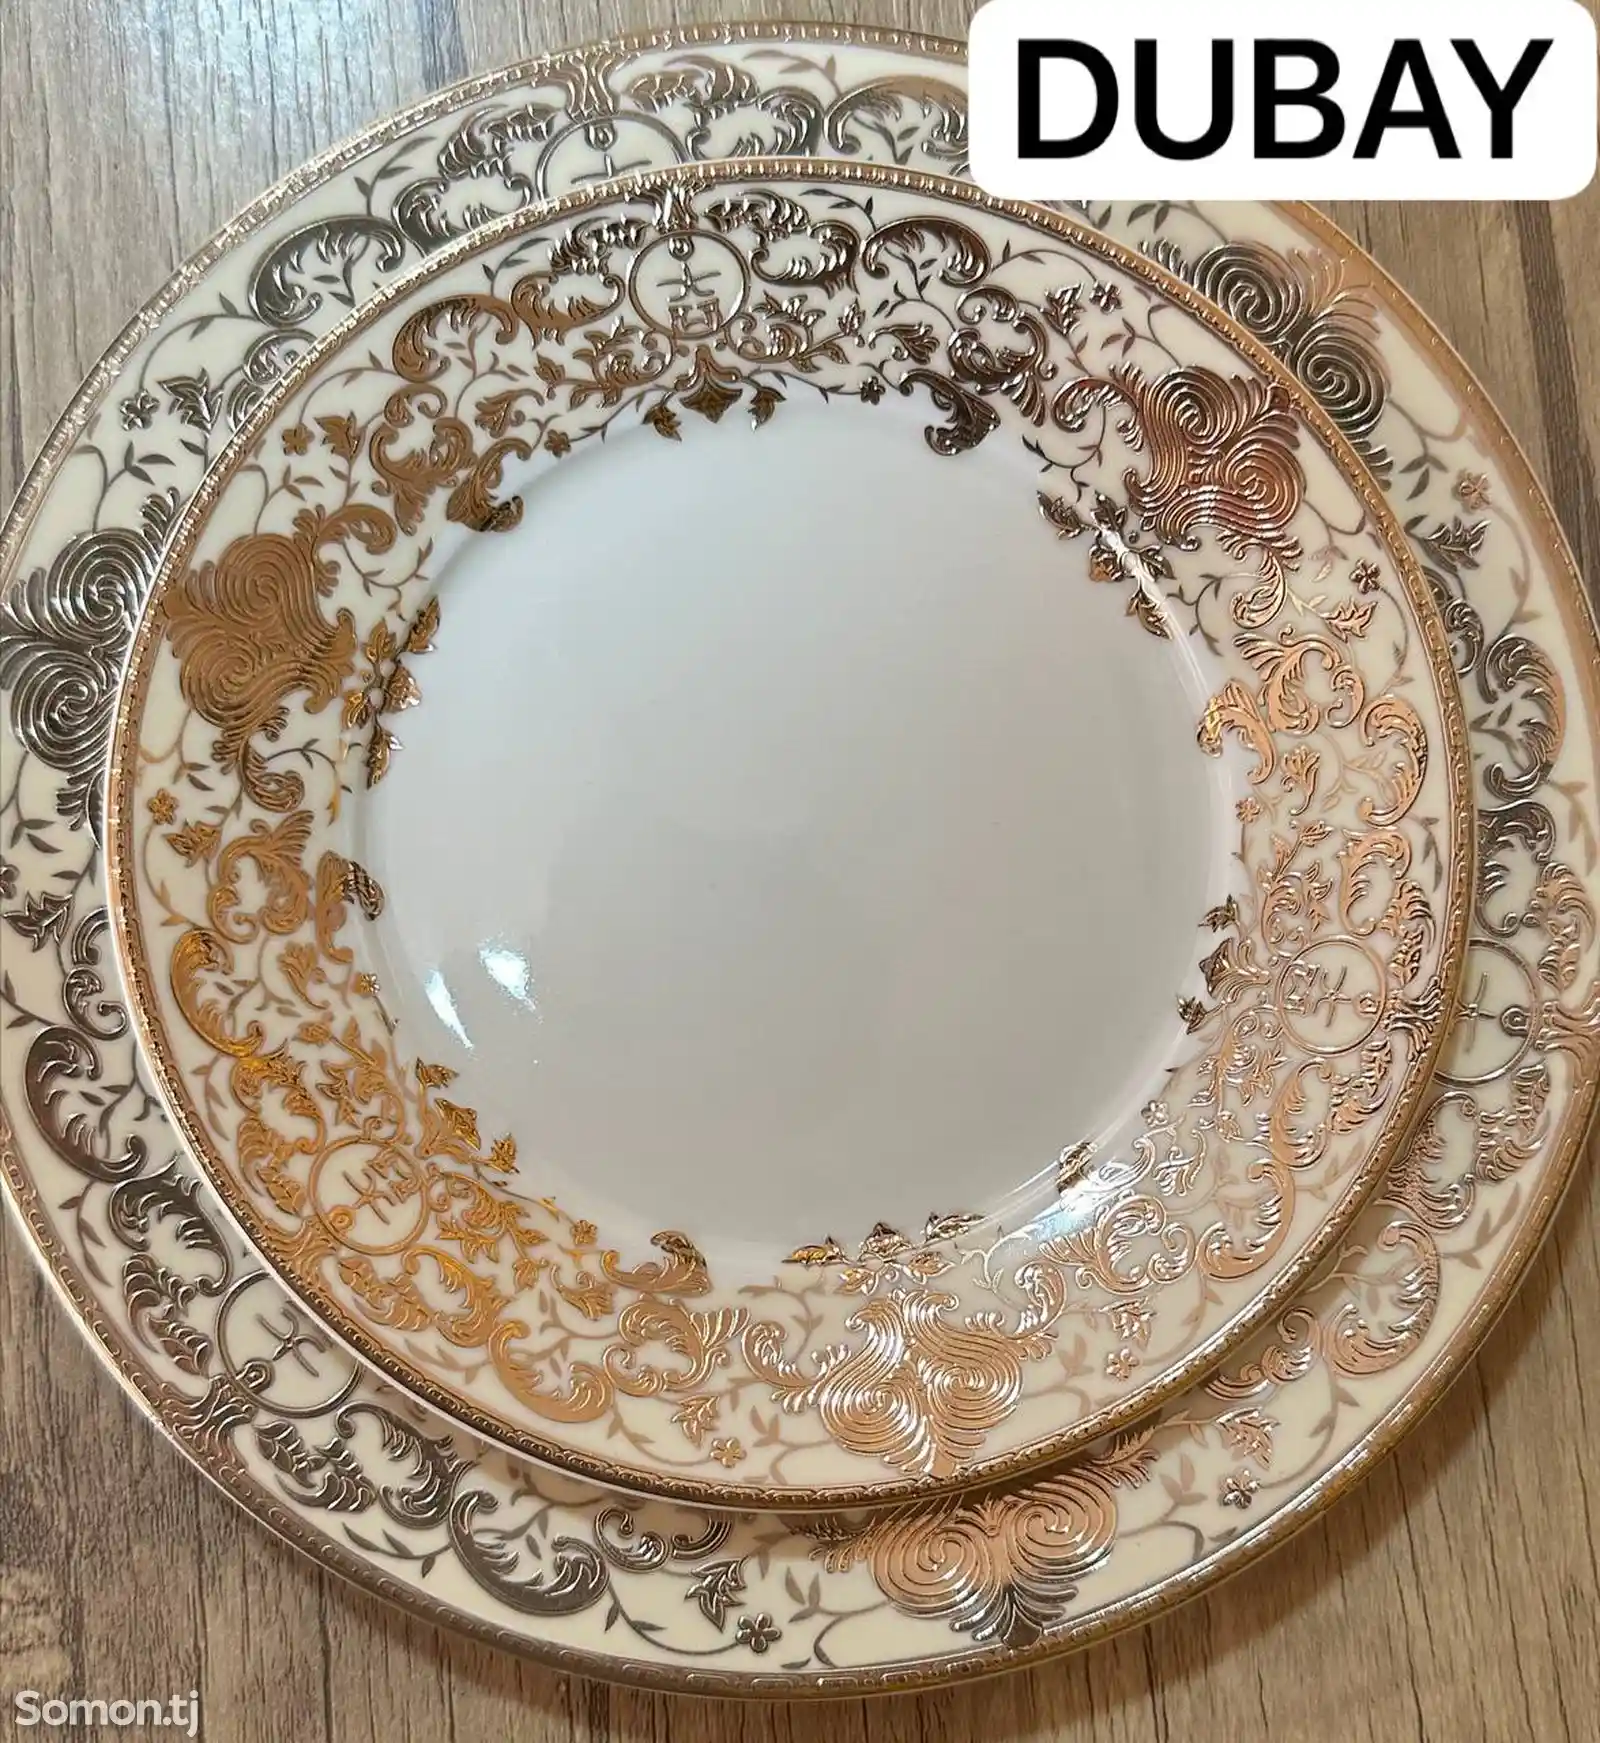 Набор посуды Dubay-02 комплект 6-7